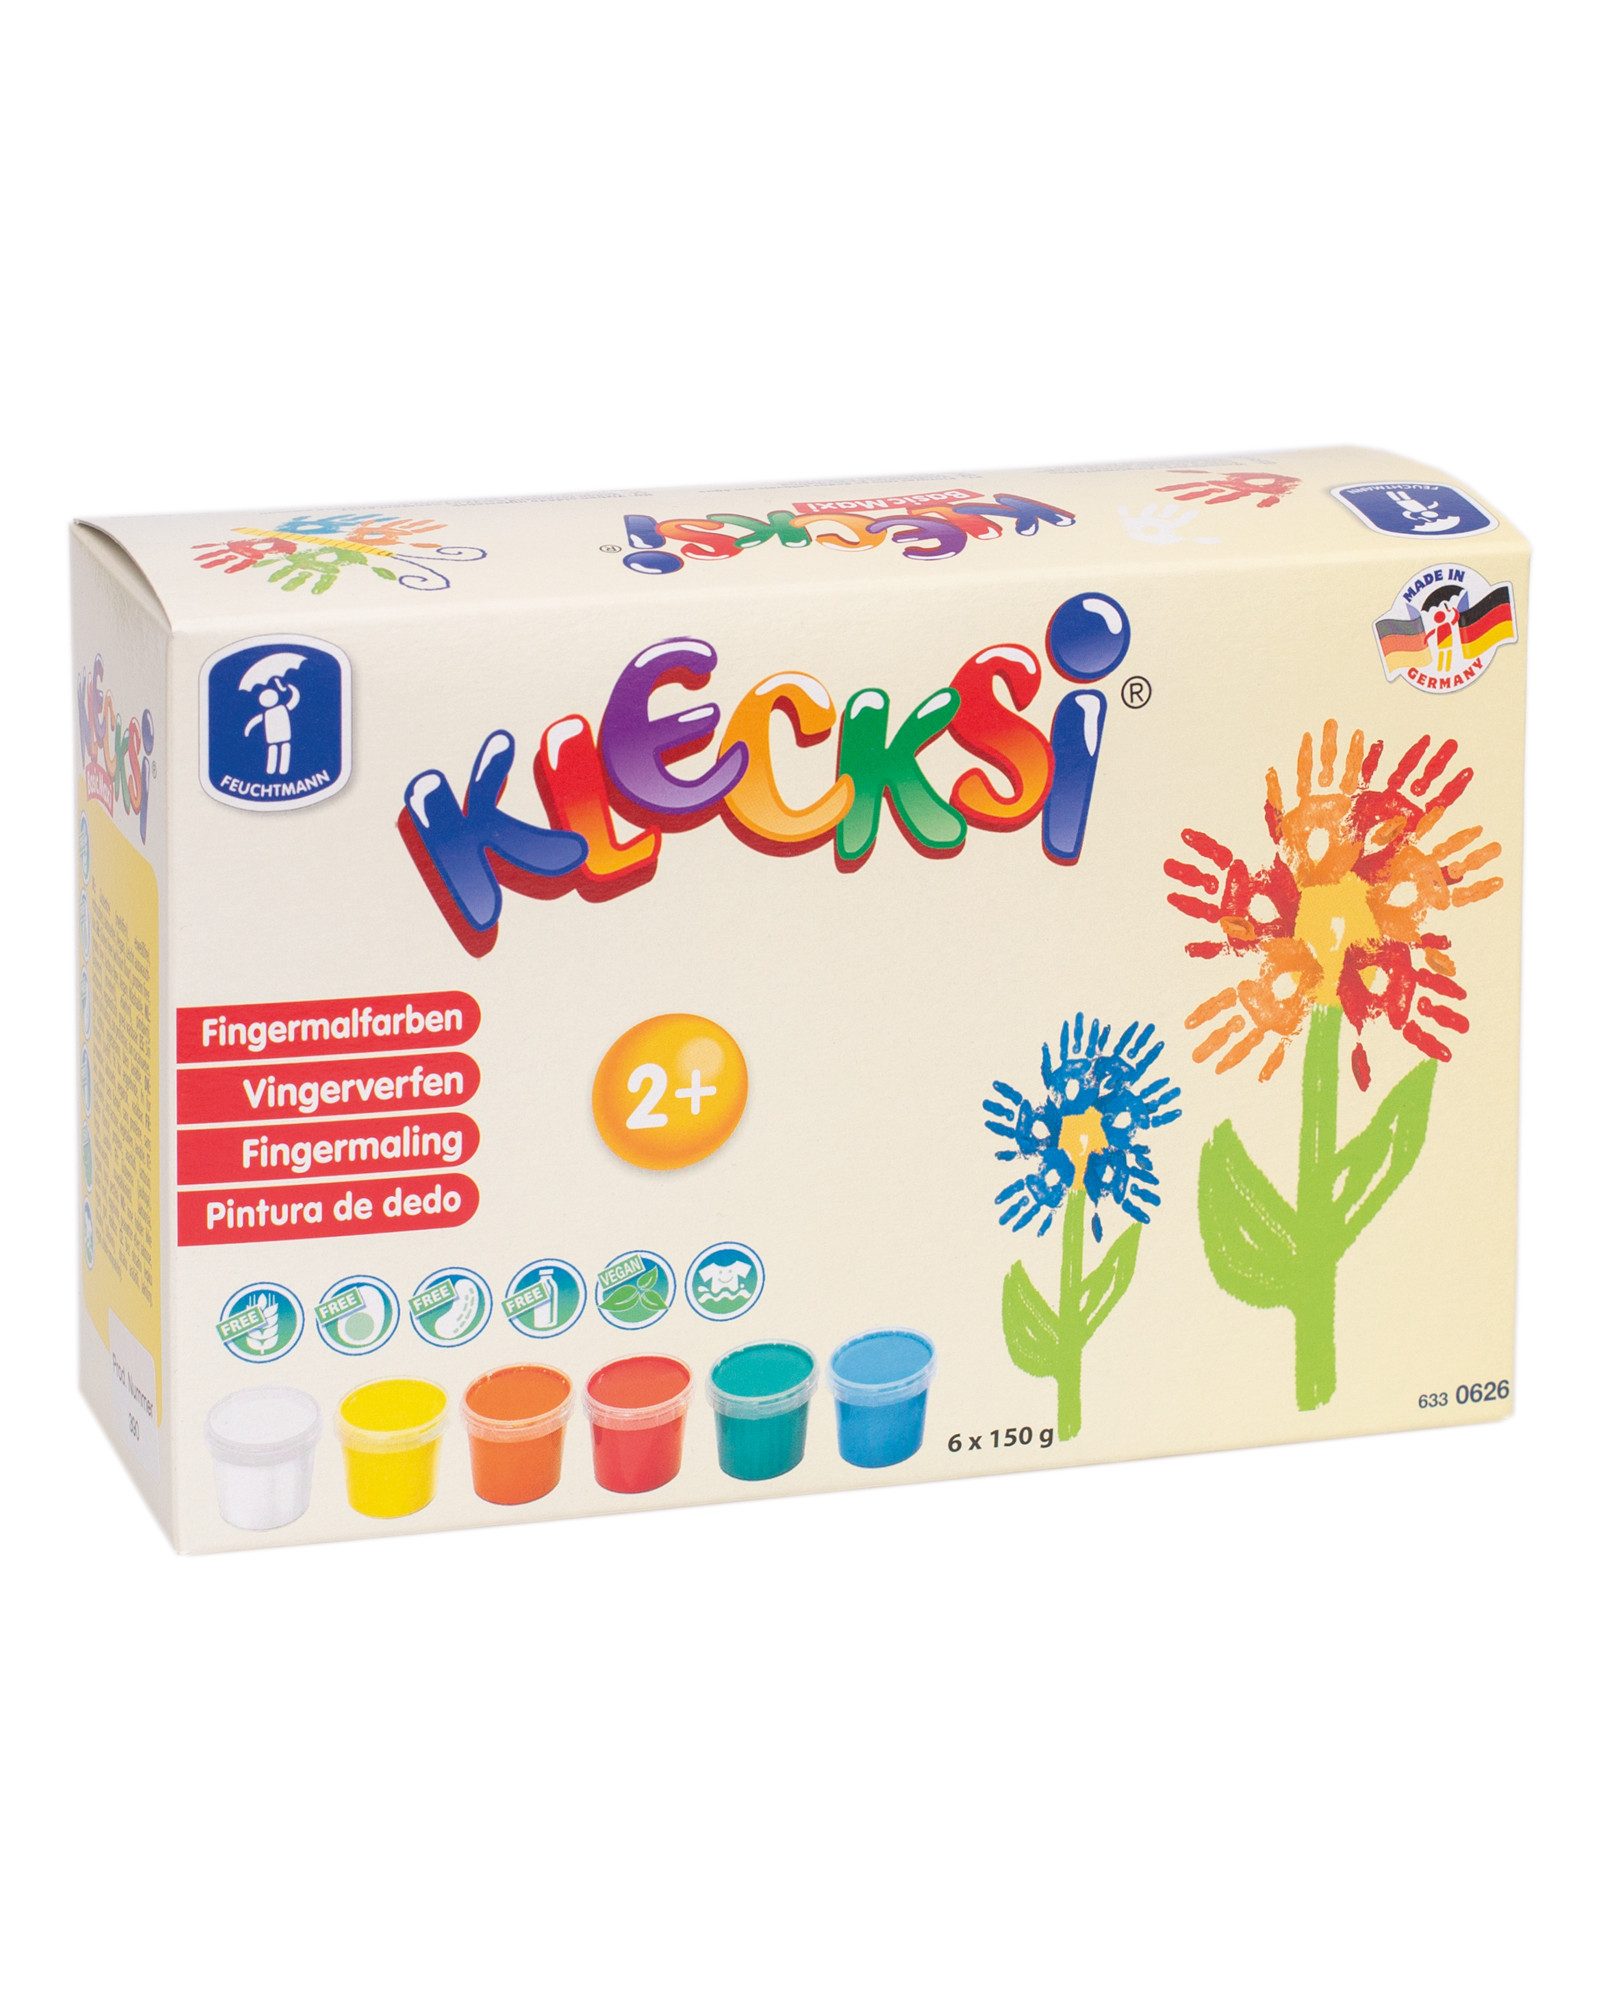 Feuchtmann Fingerfarbe KLECKSi Basic Maxi, 6 x 150g hautfreundliche Fingermalfarbe für Kinder